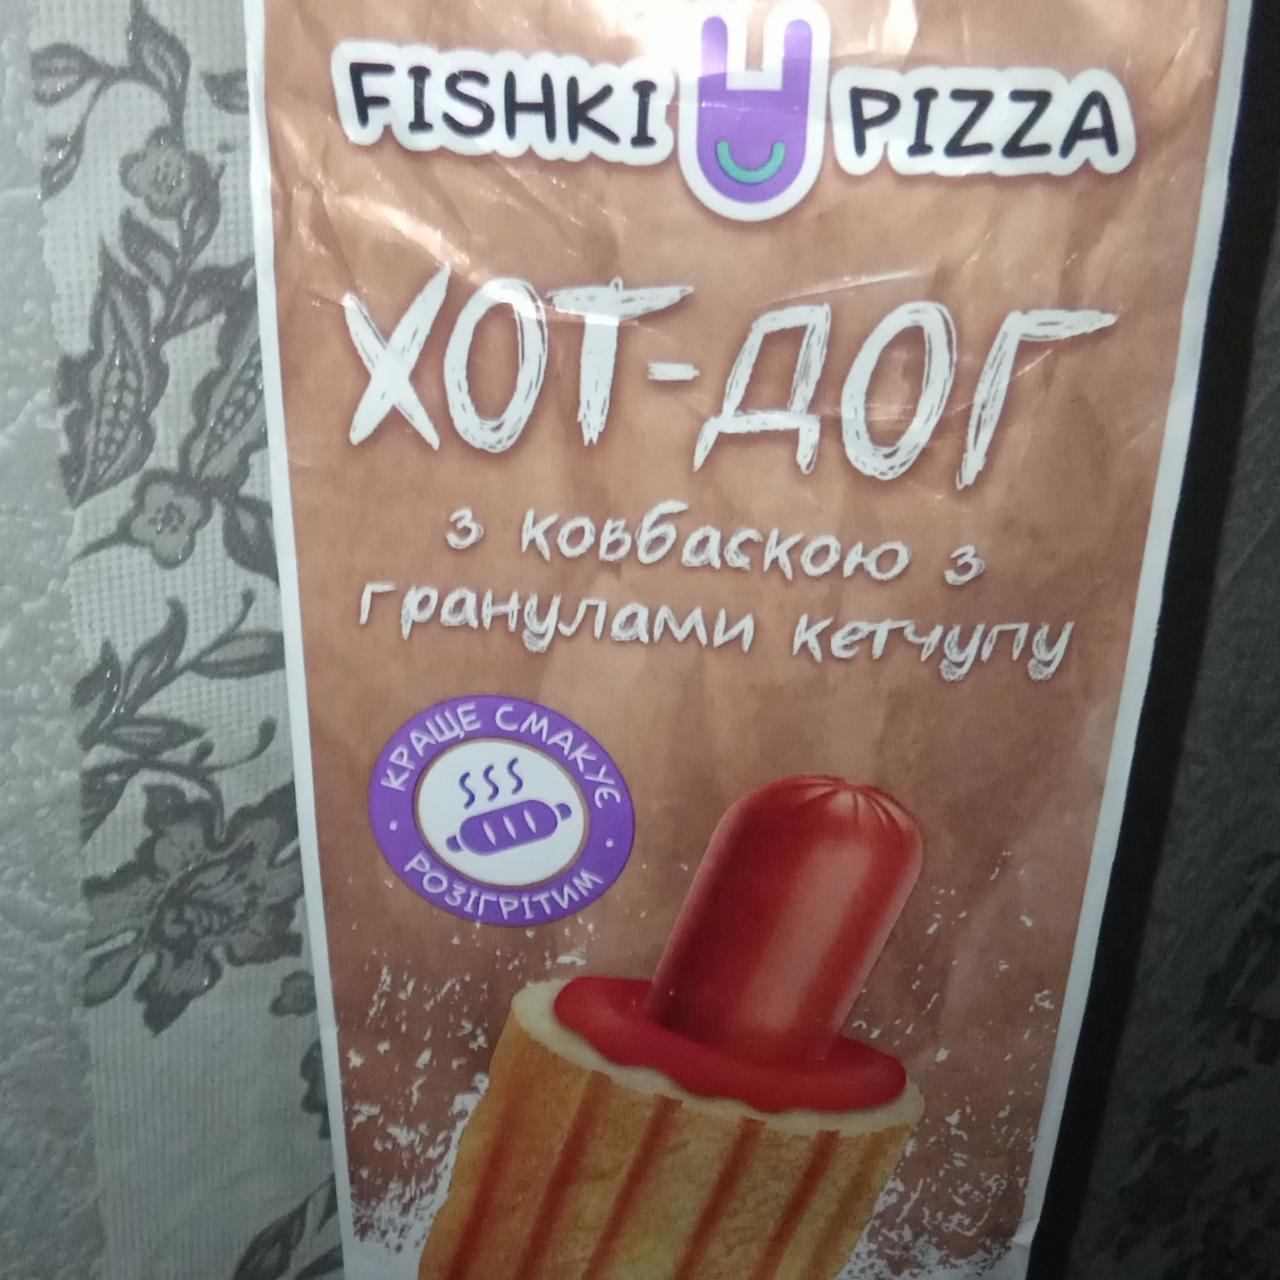 Фото - Хот-дог з ковбаскою з гранулами кетчупу Fishki Pizza